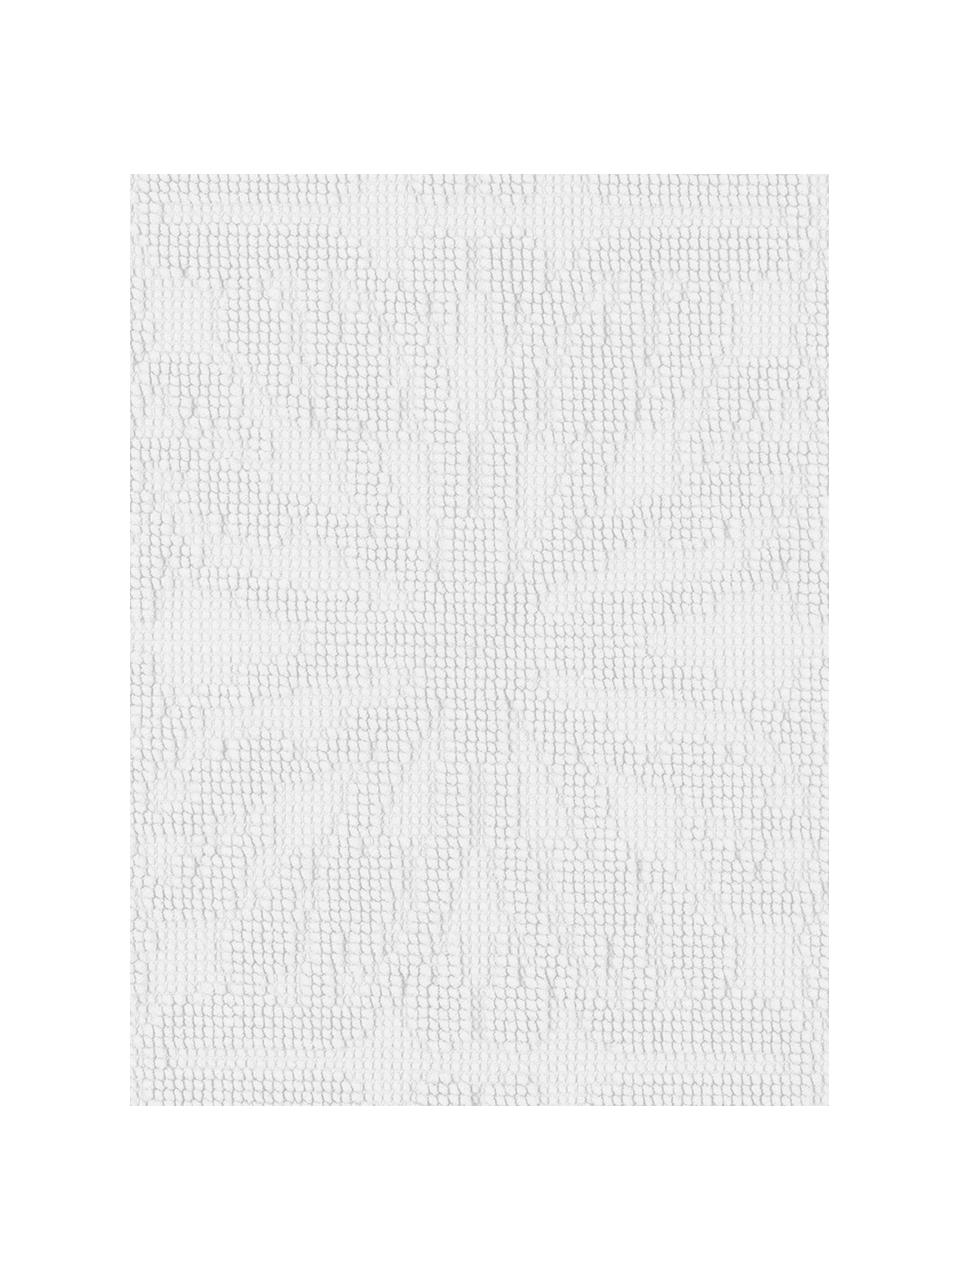 Baumwoll-Badvorleger Hammam mit Hoch-Tief-Muster, 100% Baumwolle, Weiß, B 60 x L 80 cm